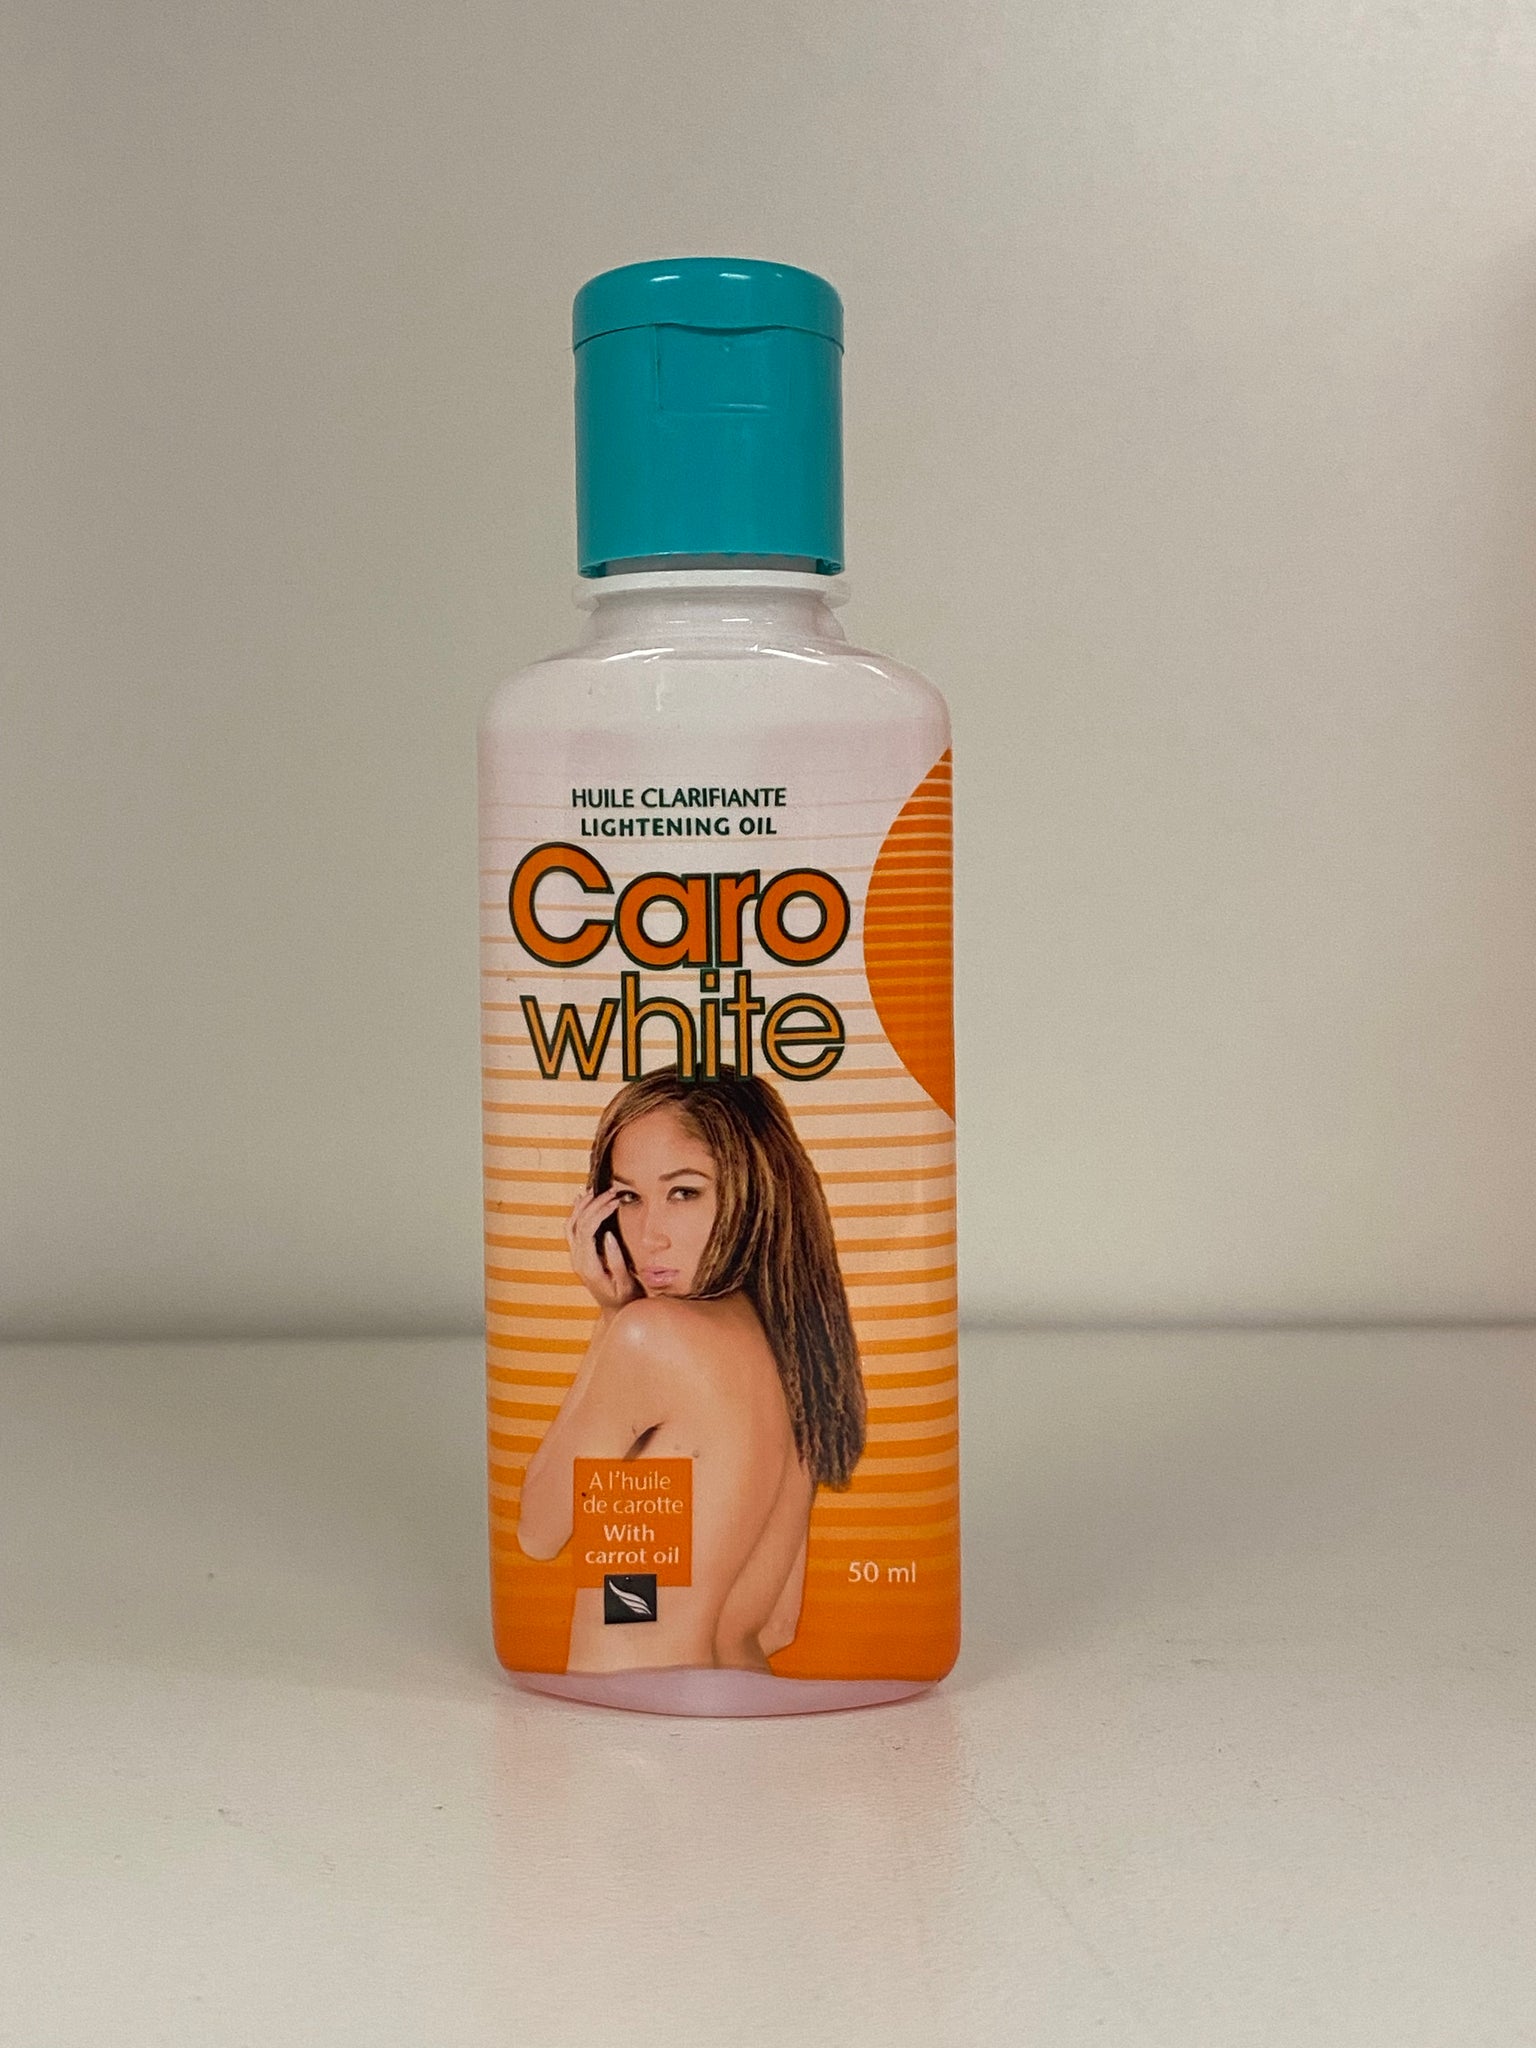 Caro White lightening oil